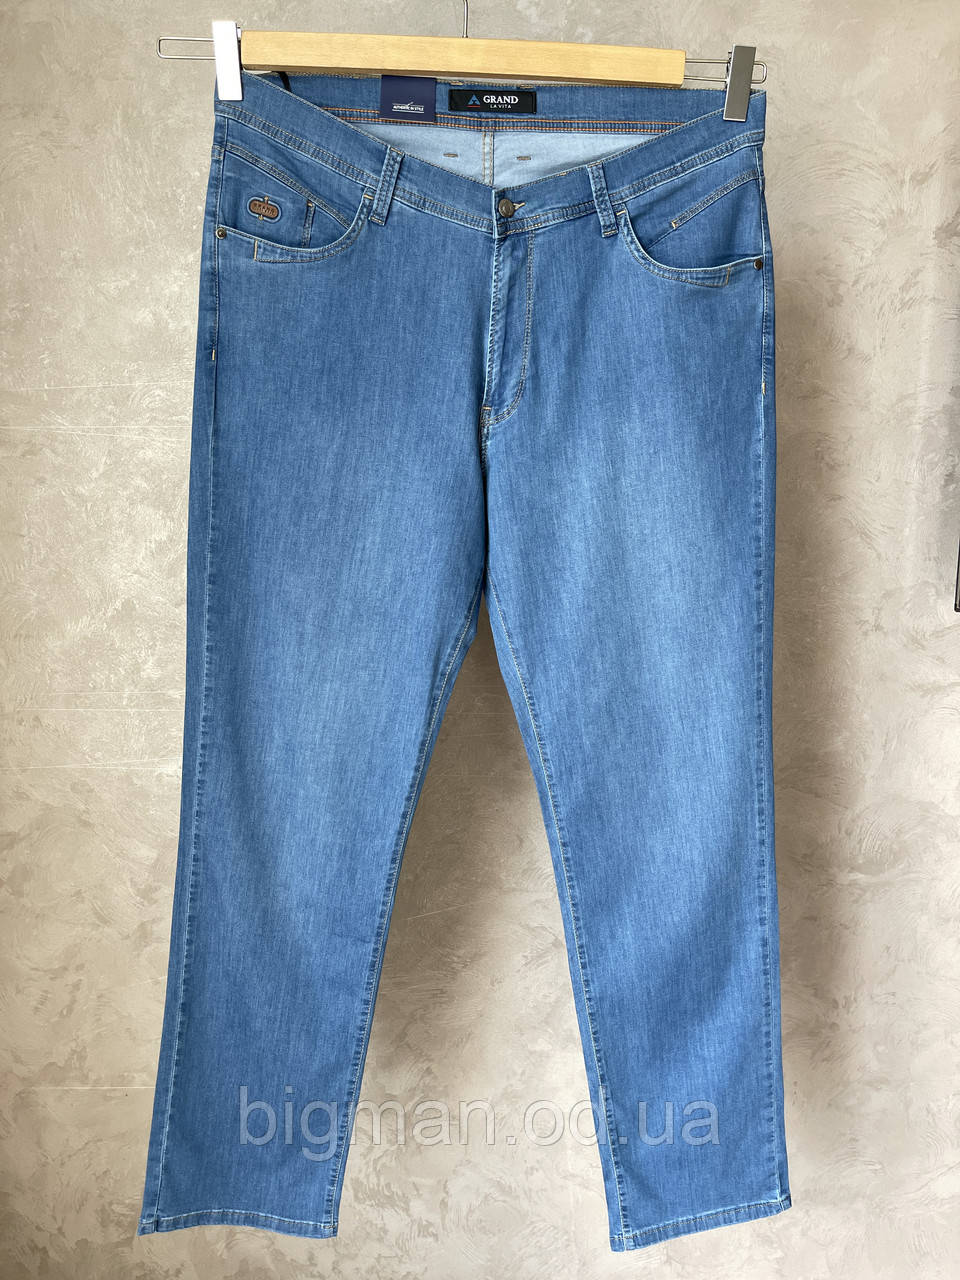 Чоловічі джинси на ремені Grand la Vita 40-50 розміру великого батального розміру Туреччина, фото 1